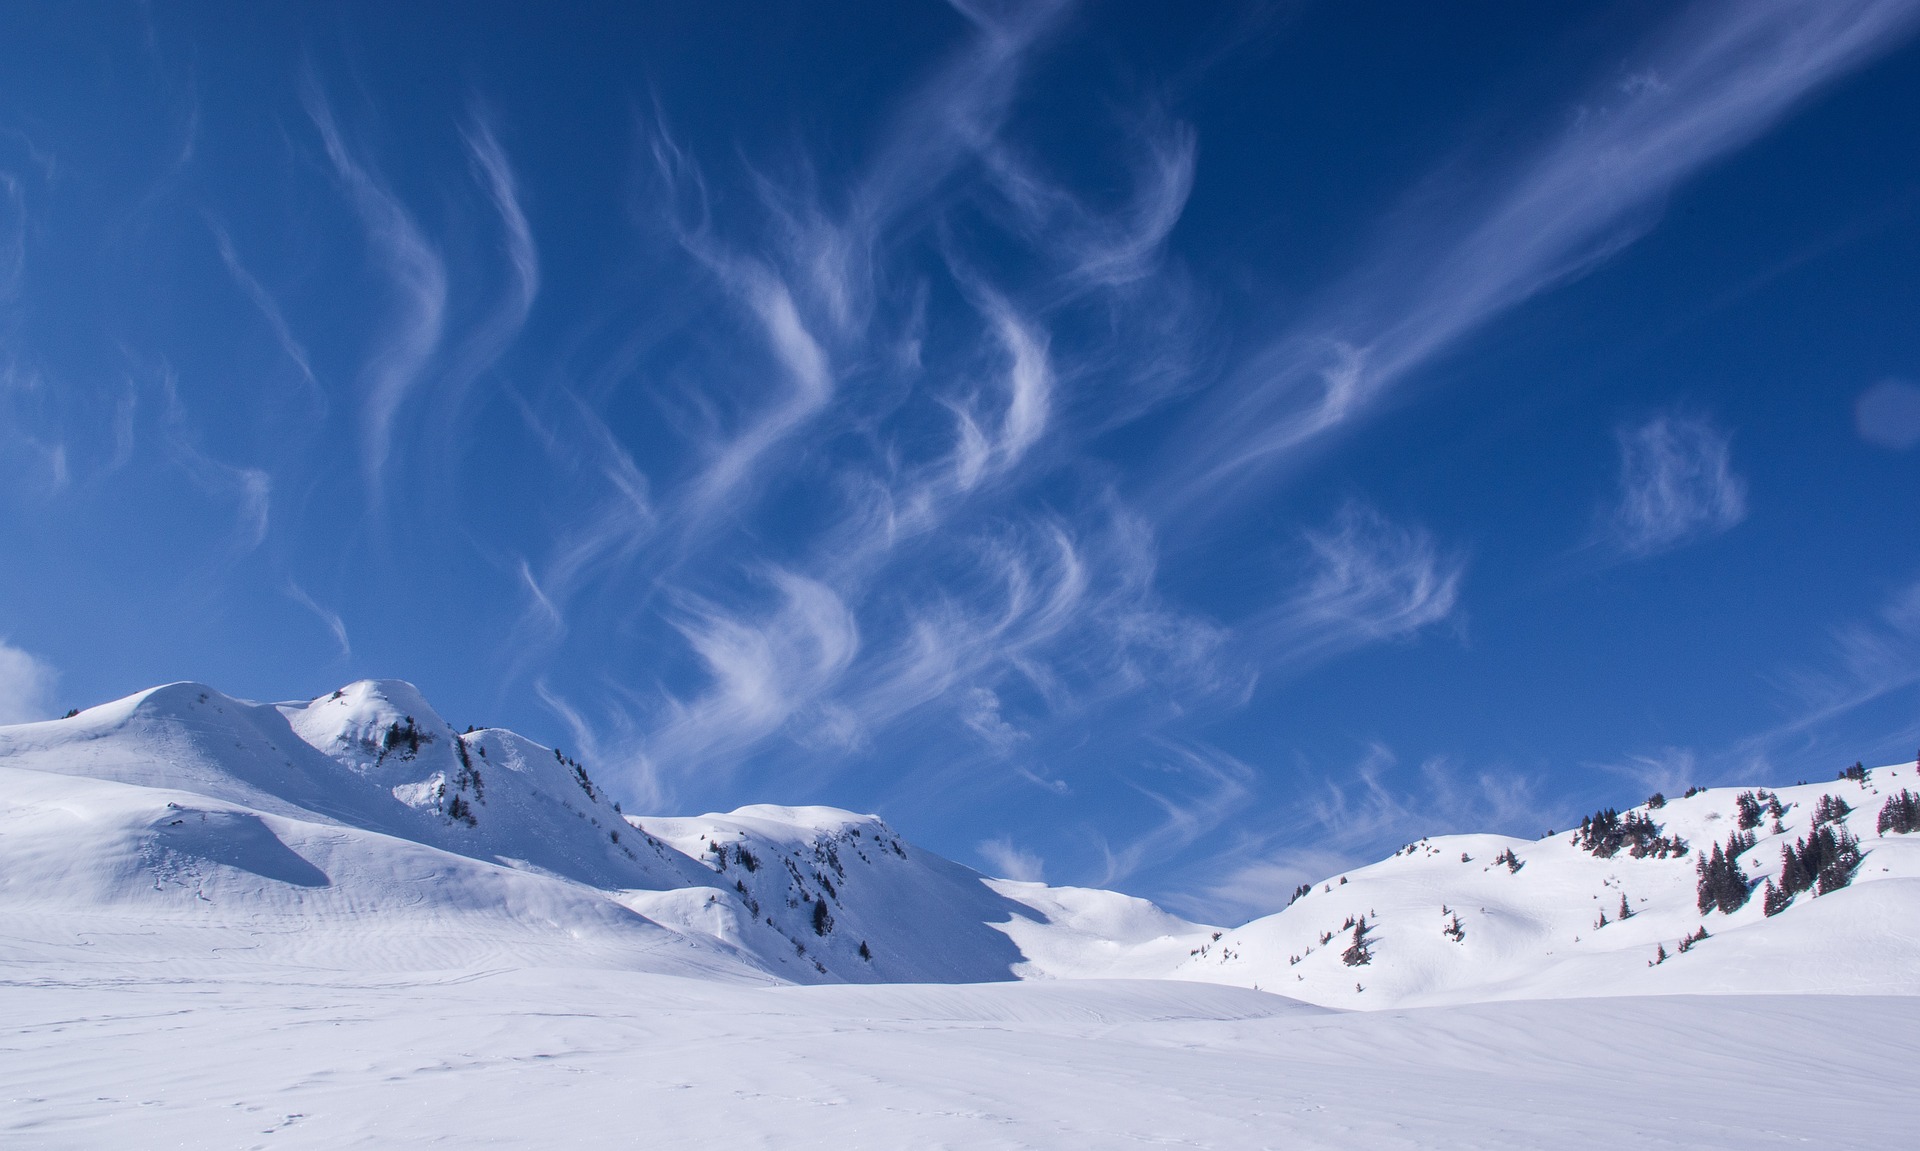 스키장에 사람이 없는 모습이고 하늘에 구름들이 함께 보인다